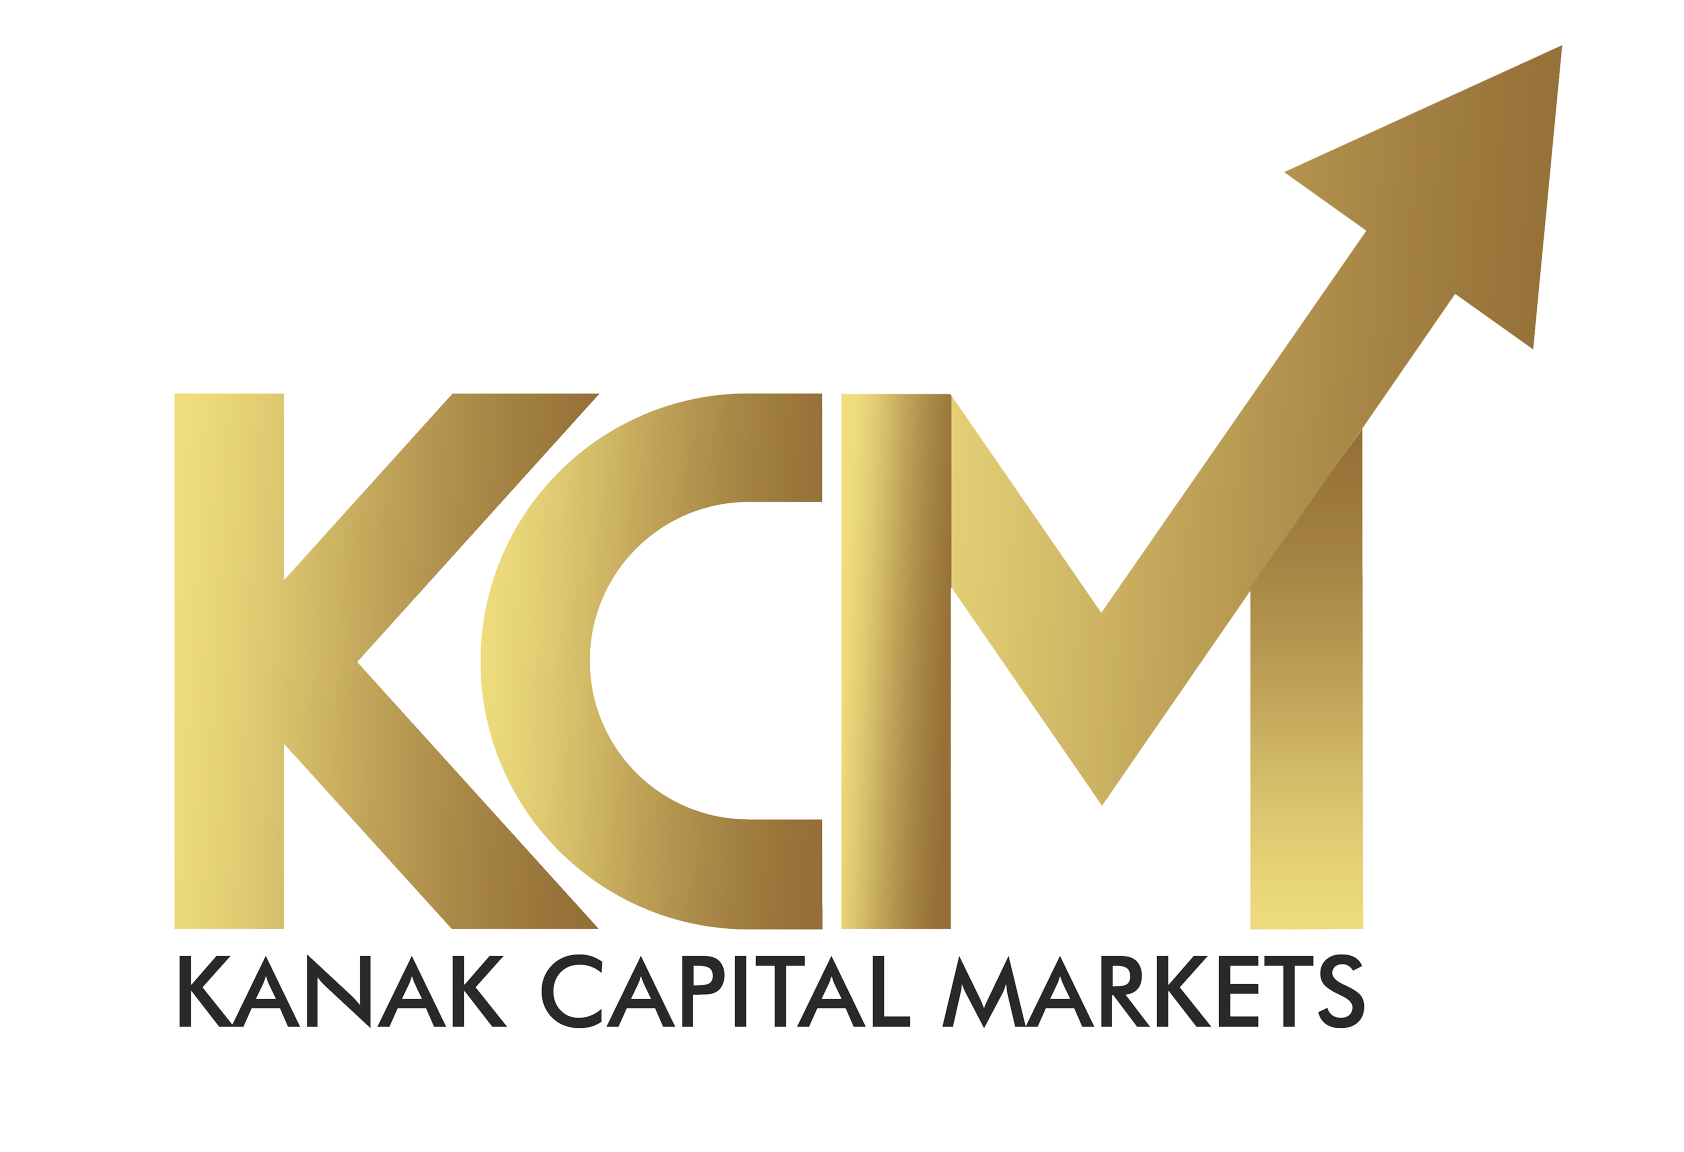 Kanak Capital Markets